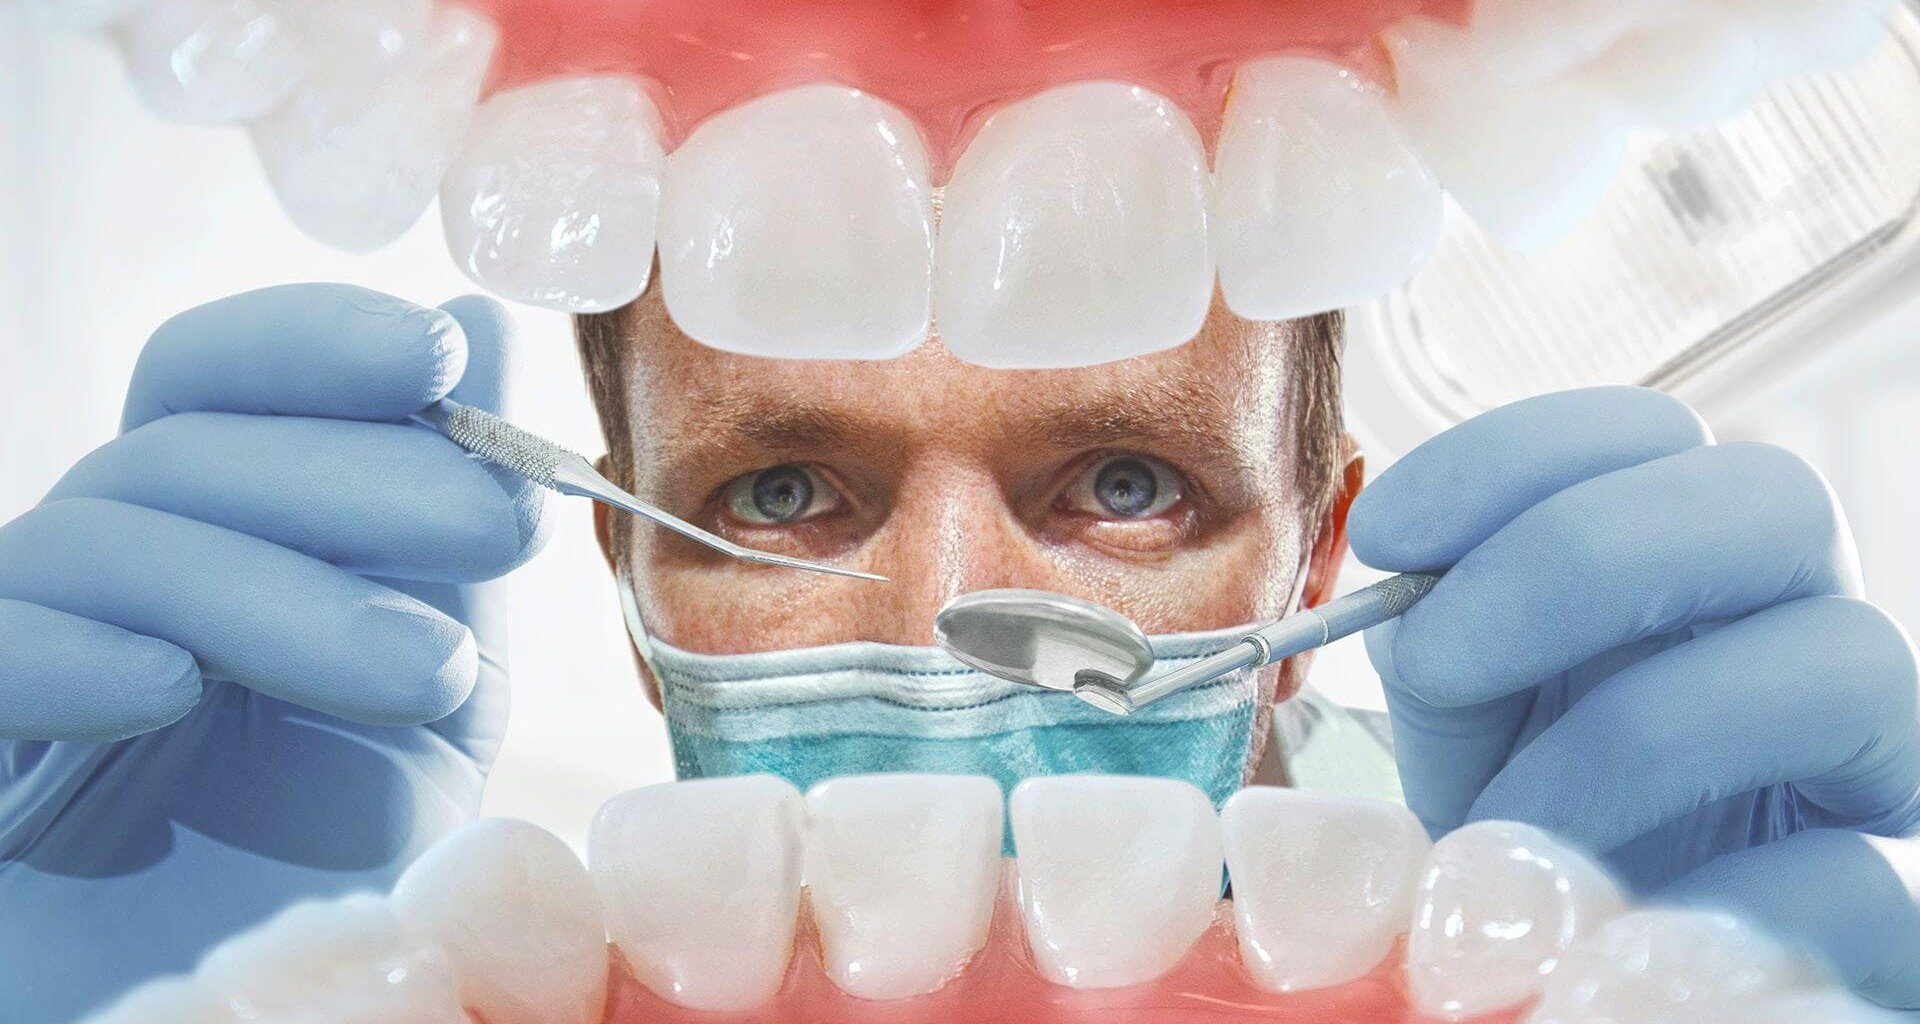 Новые зубы можно вырастить прямо в челюсти с помощью революционной методики